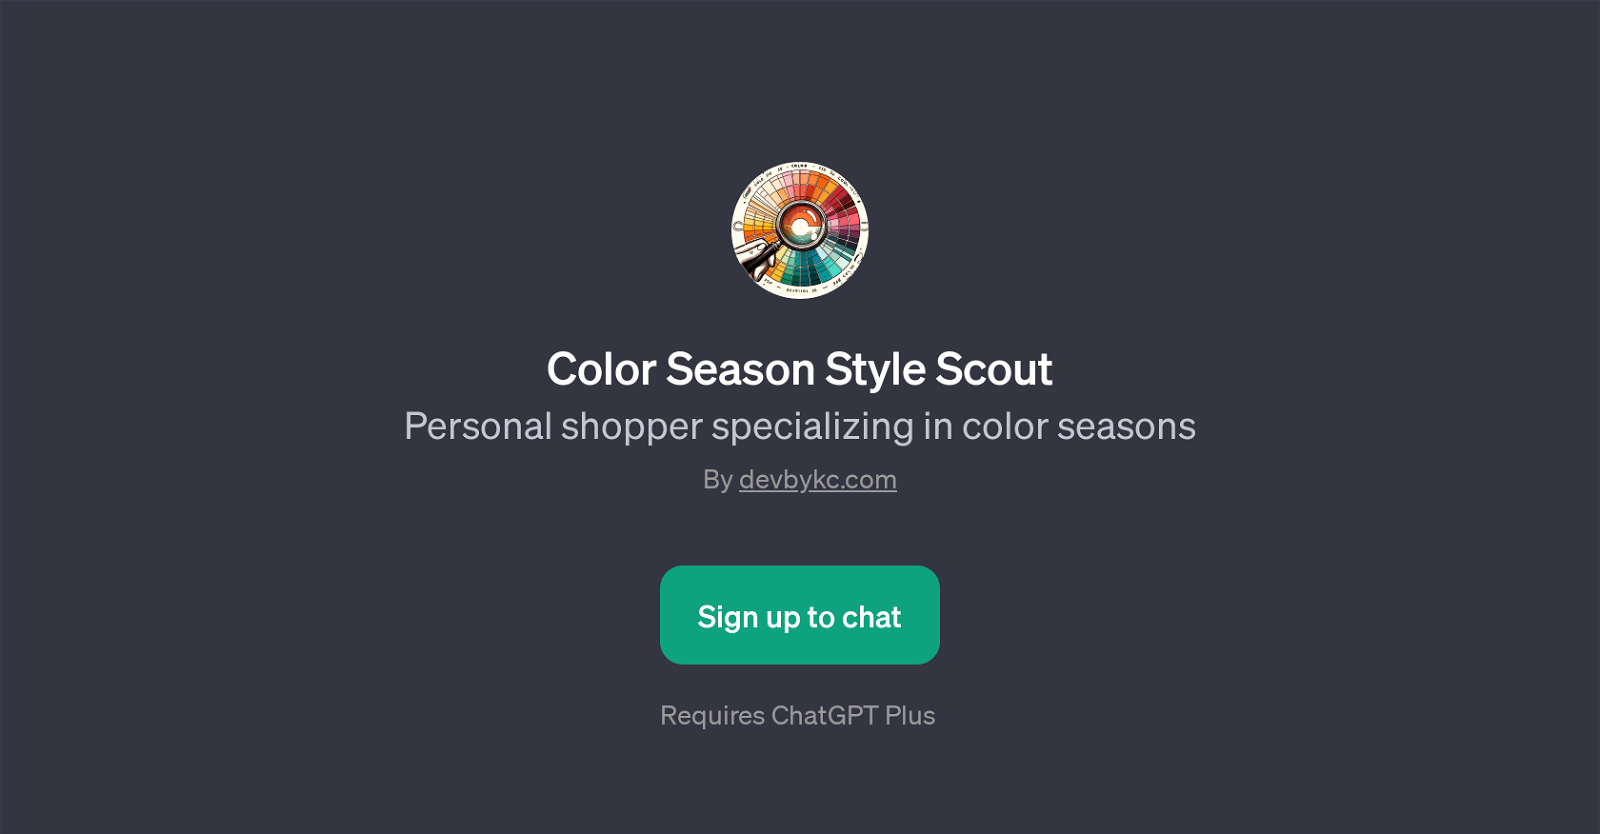 Color Season Style Scout website